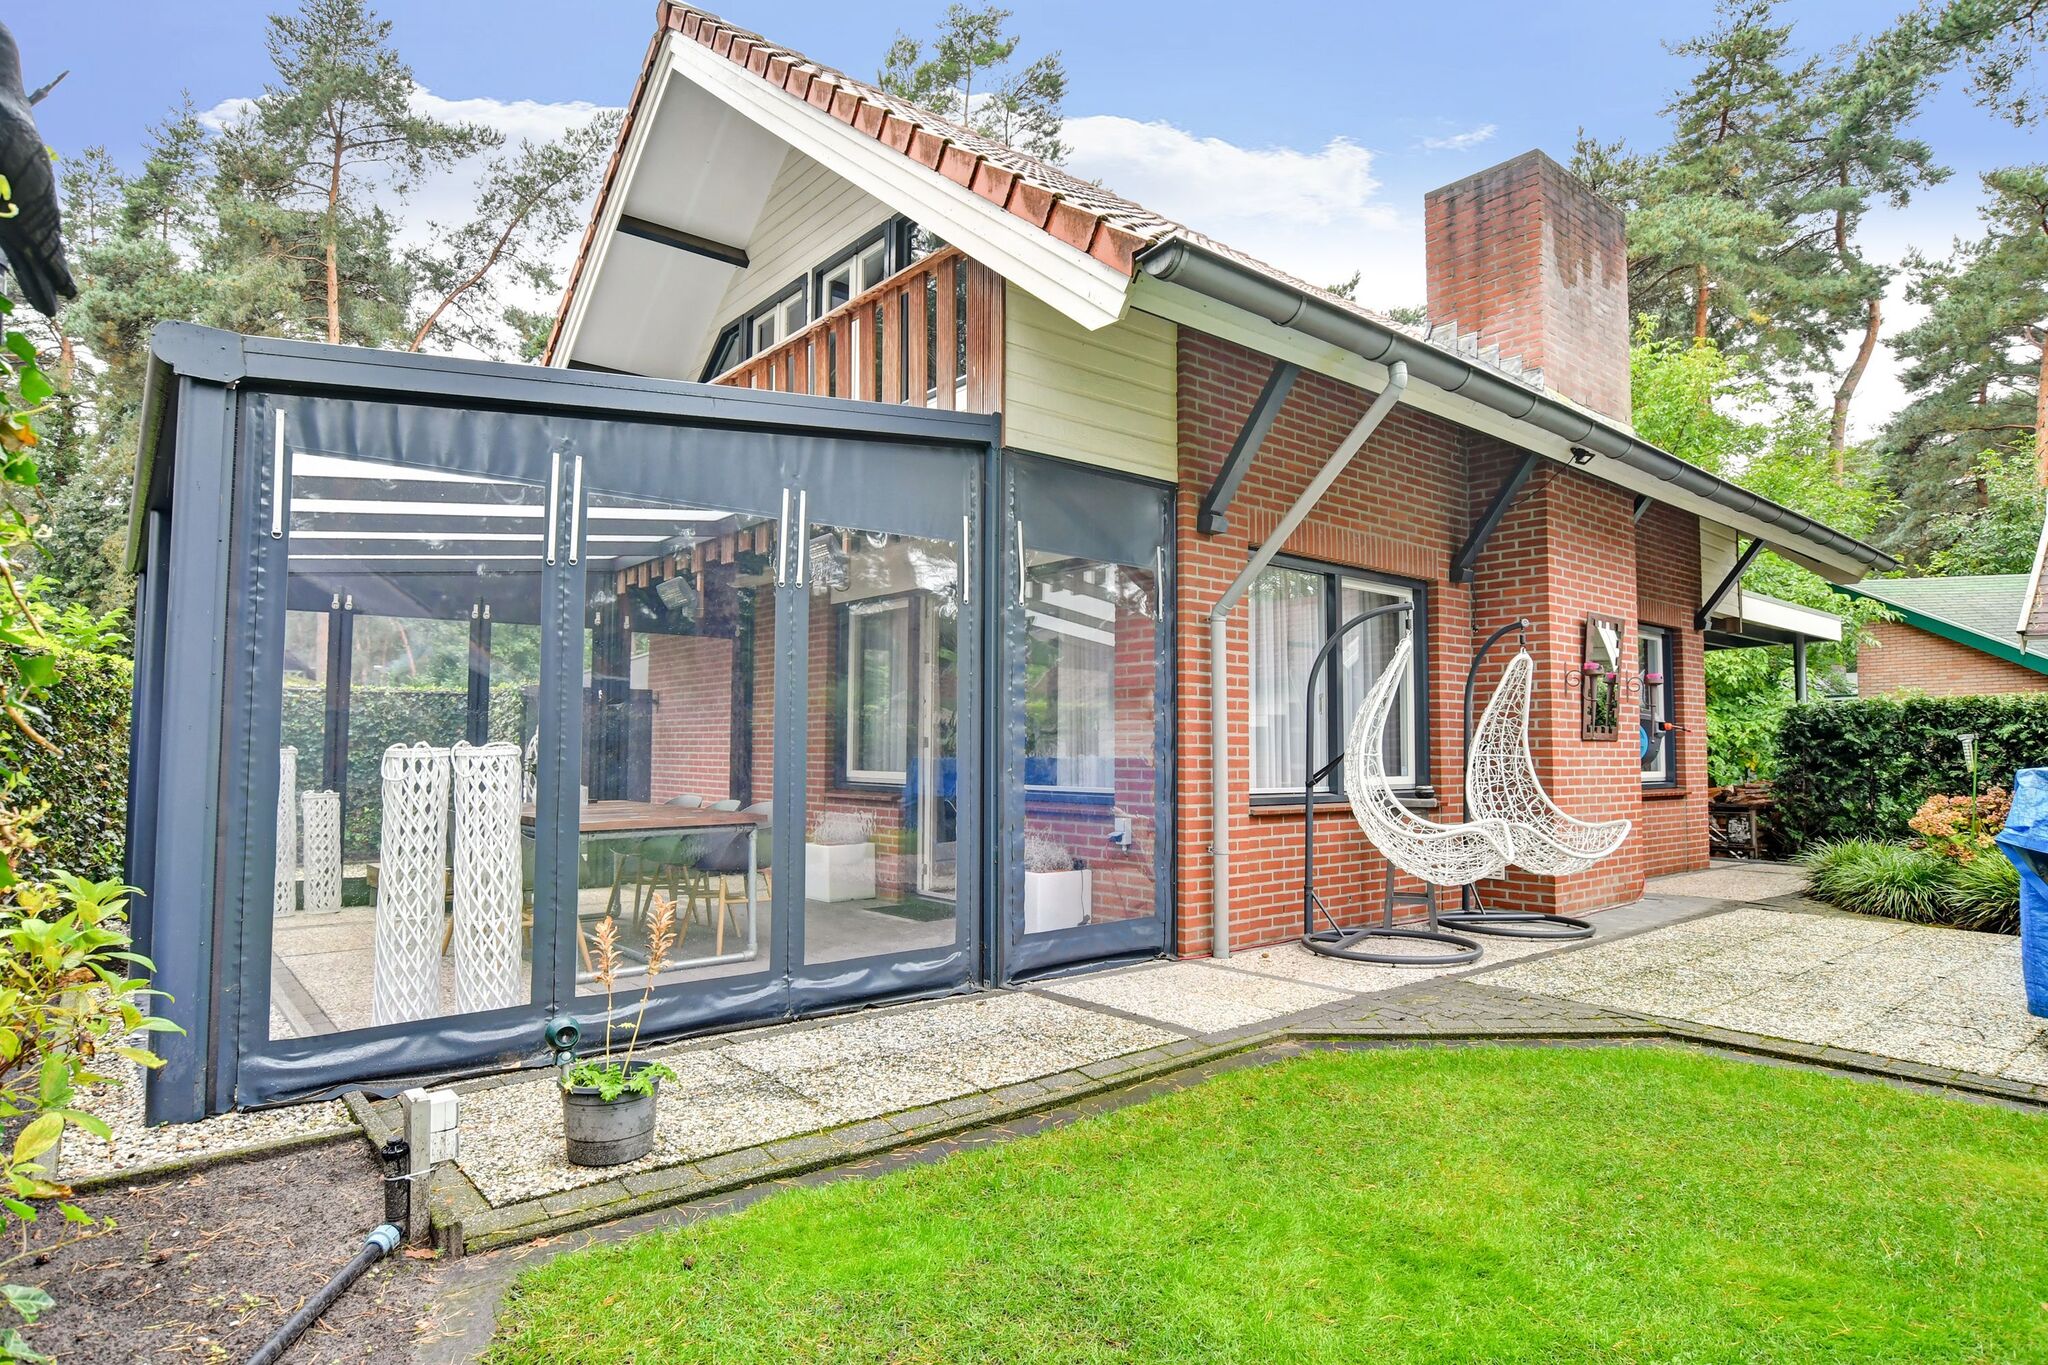 Charmante maison de vacances à Meijel avec une terrasse couverte